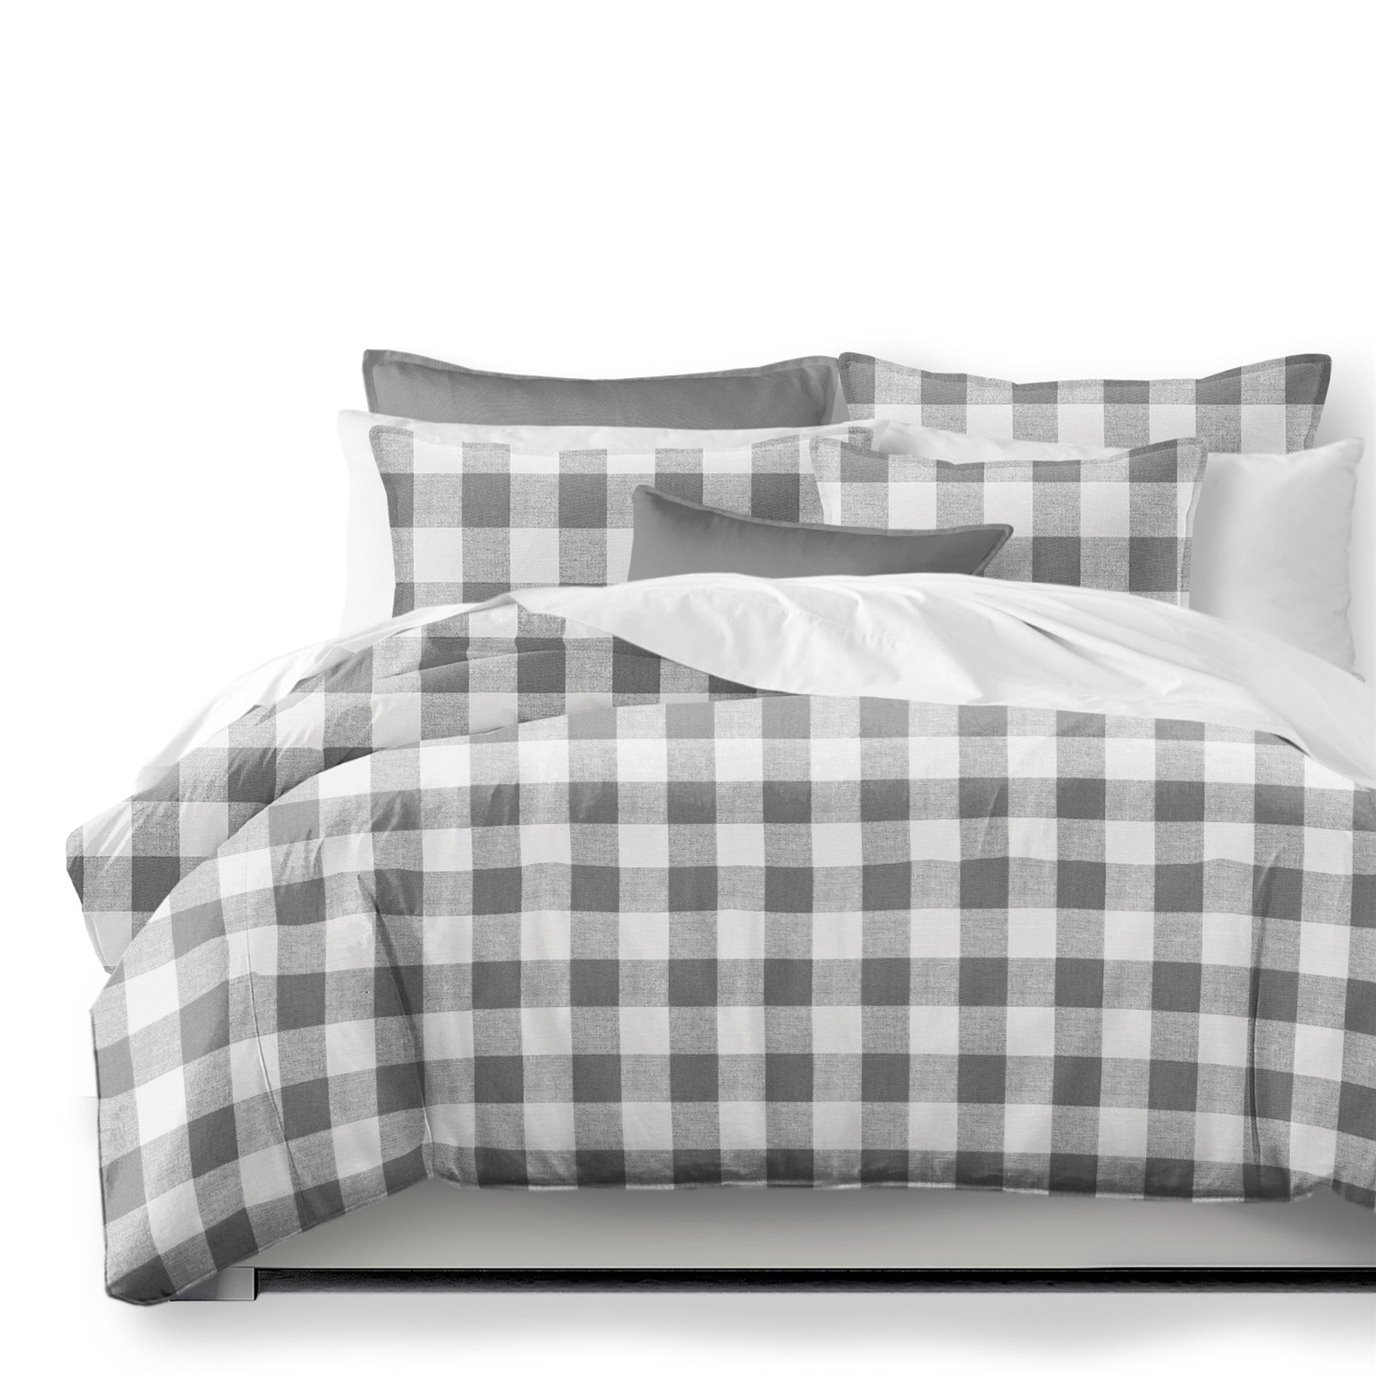 Lumberjack Check Gray/White Coverlet and Pillow Sham(s) Set - Size Full